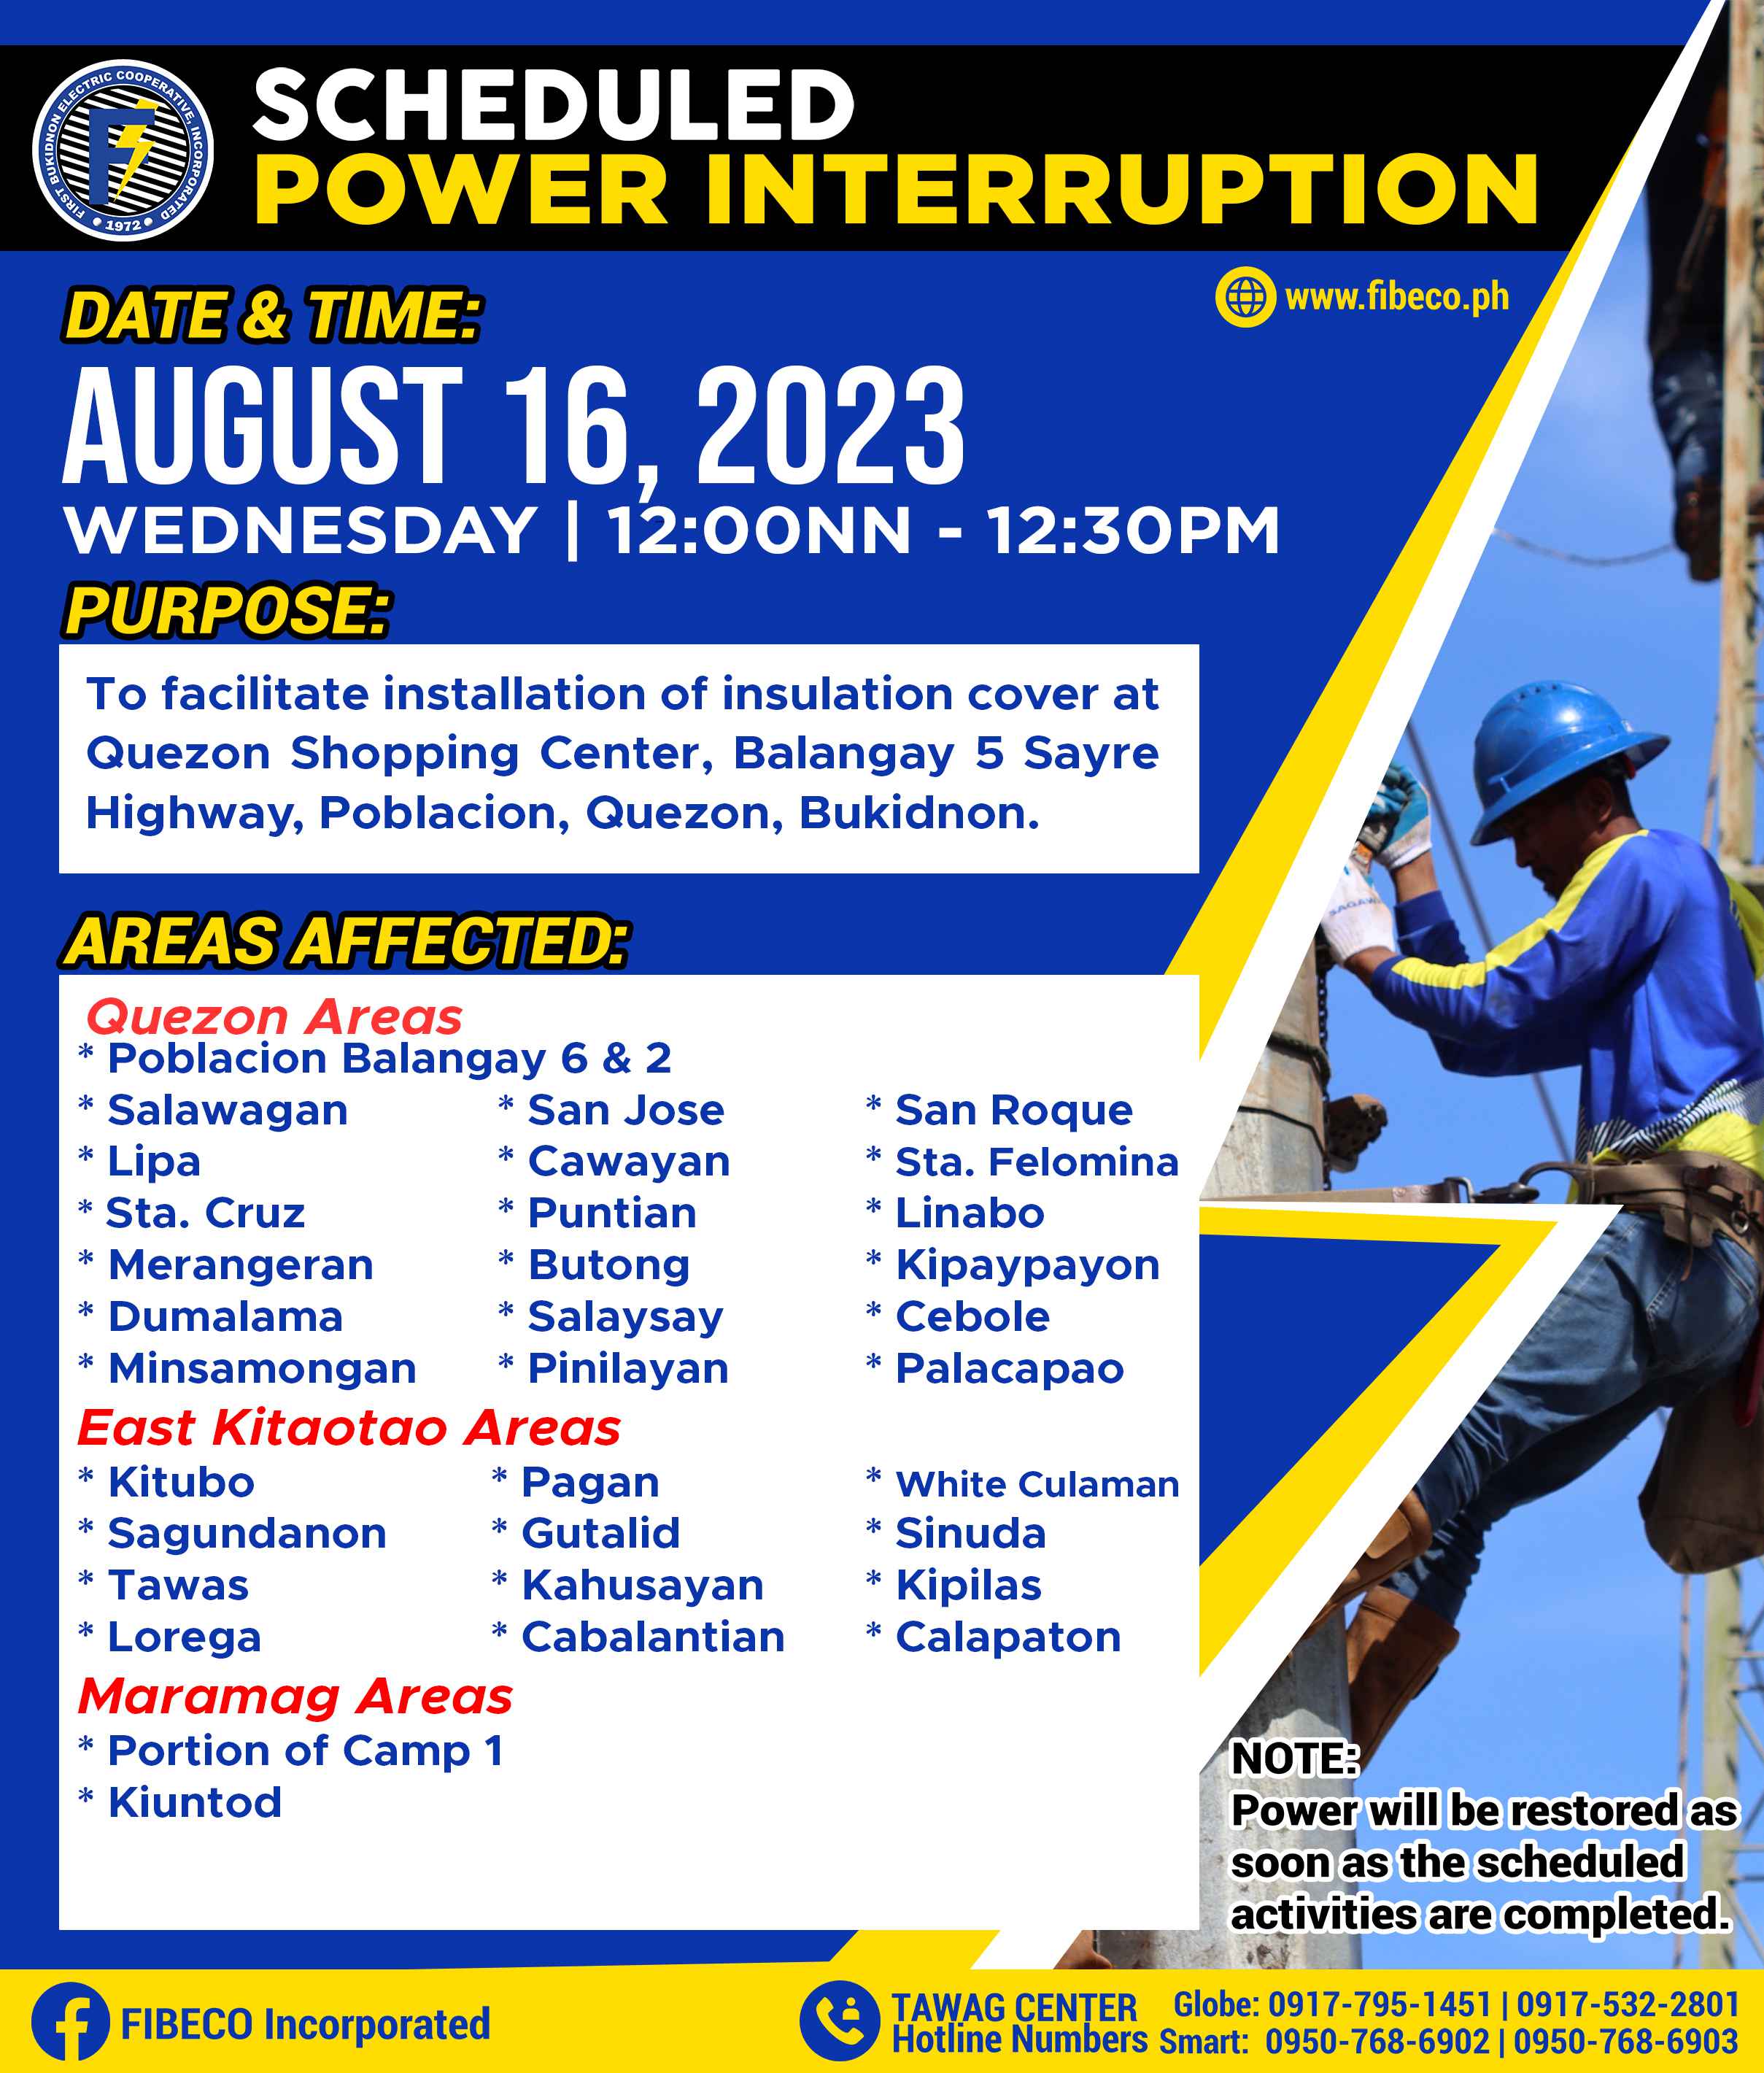 Power interuption AUGUST 16, 2023 | WEDNESDAY
